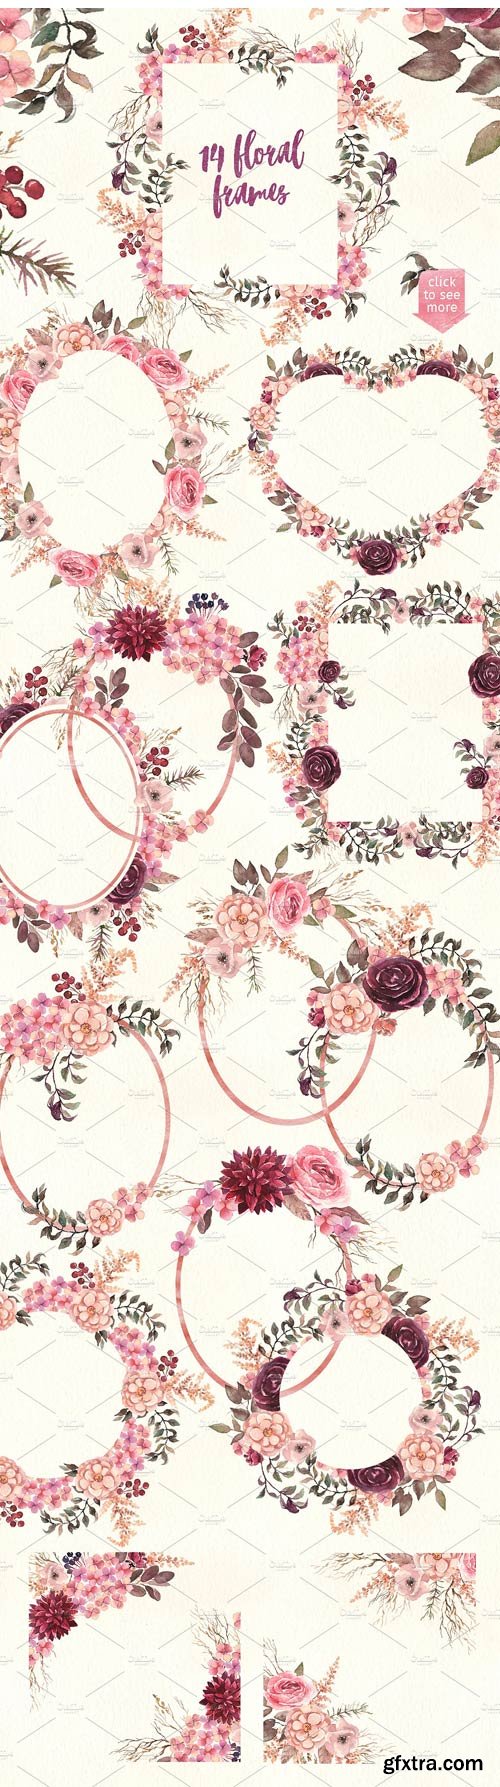 CM 1409085 - Watercolor Floral Pack